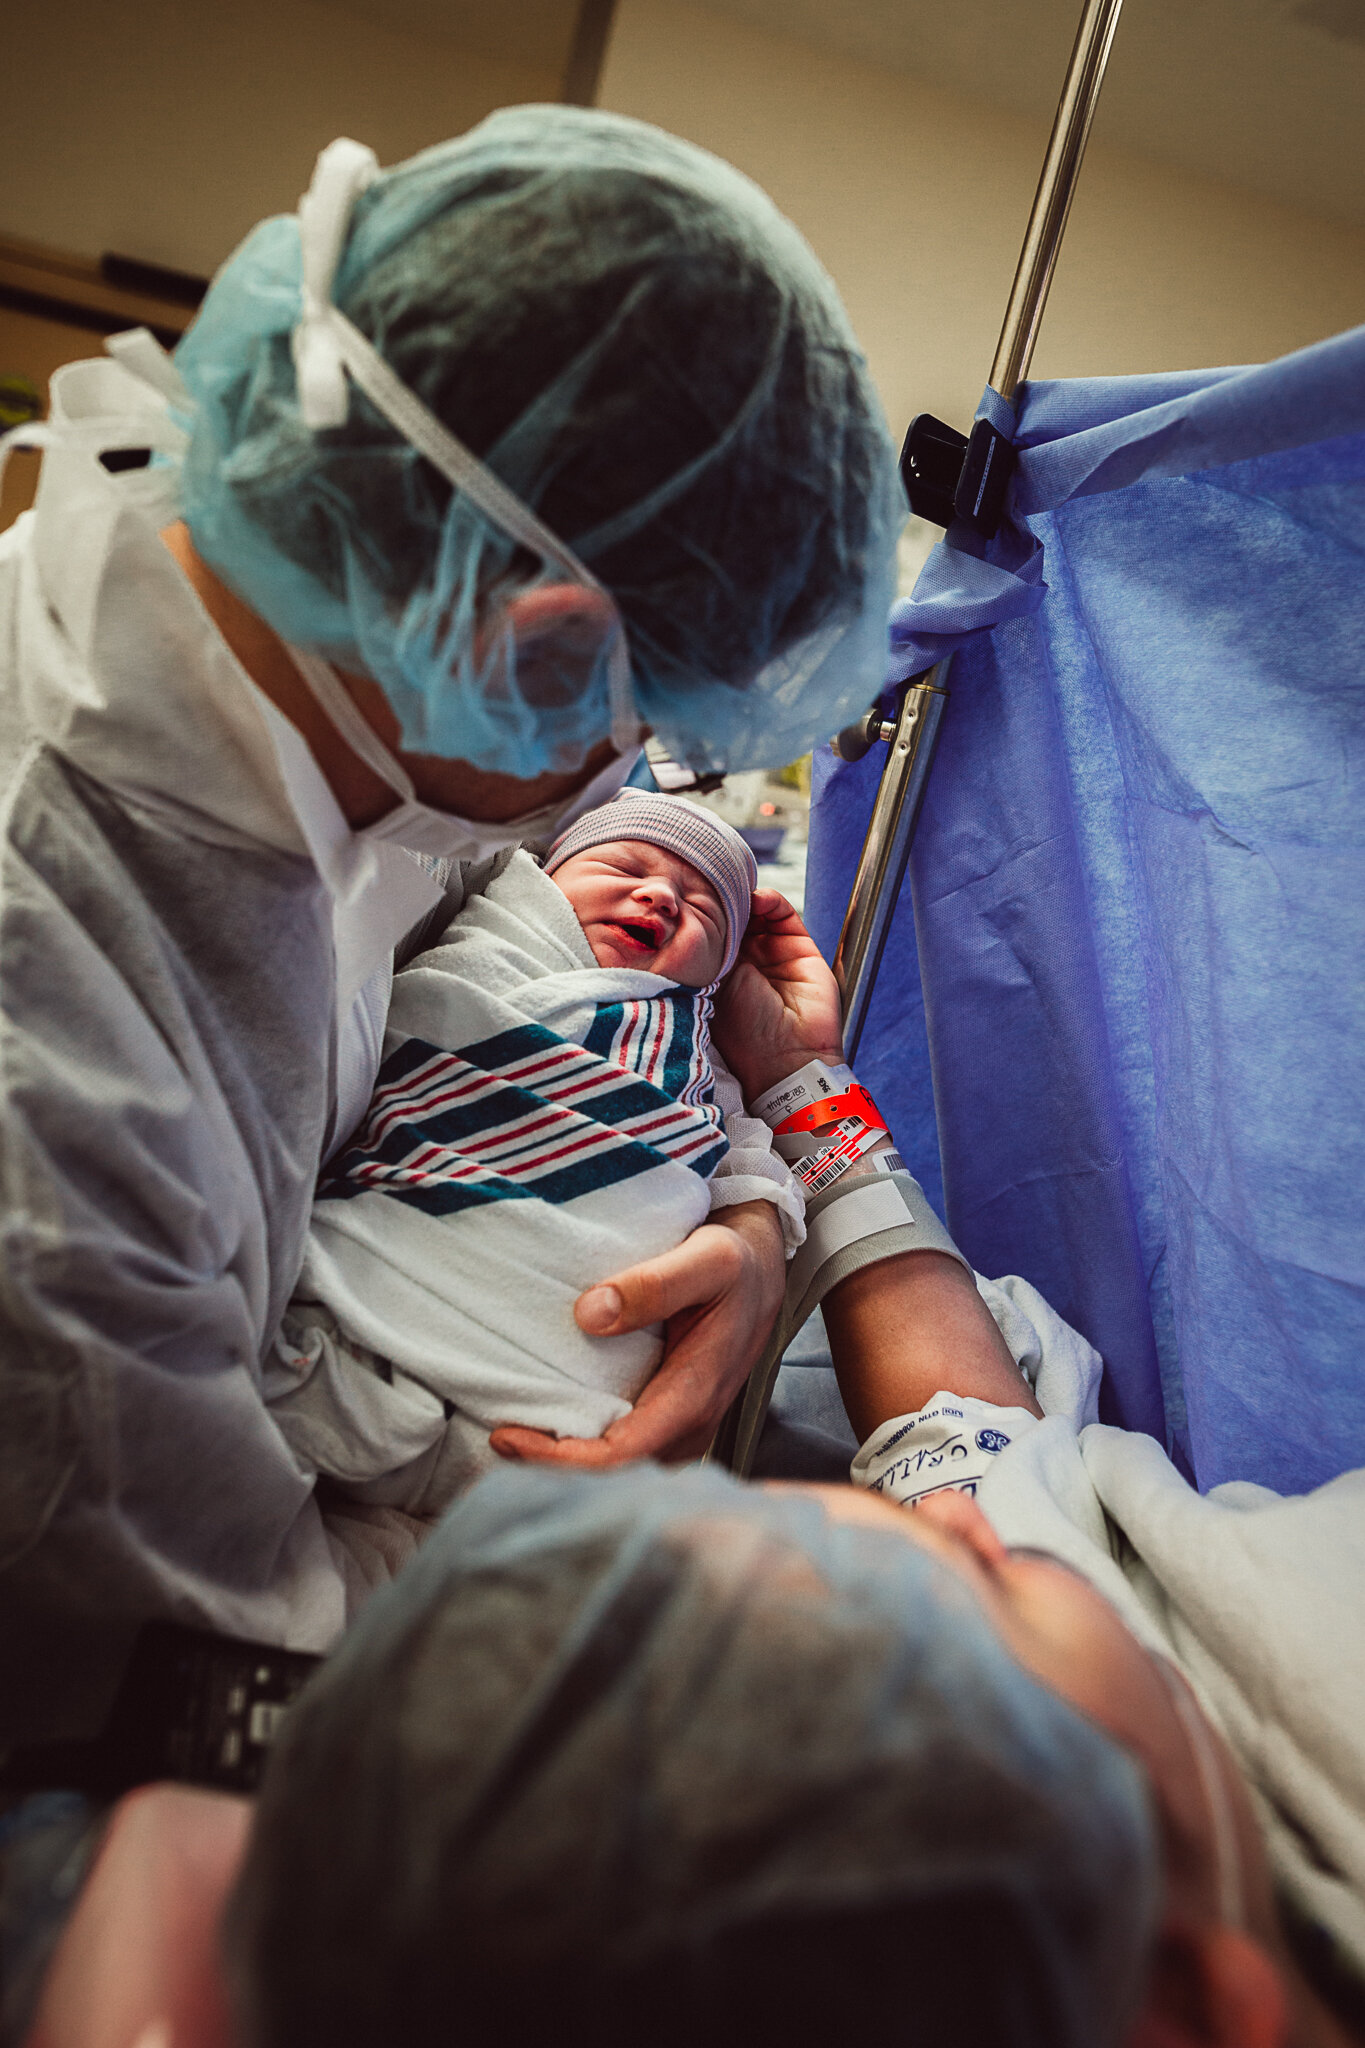 cesarean-birth-postpartum-maggie-williams-3908.jpg